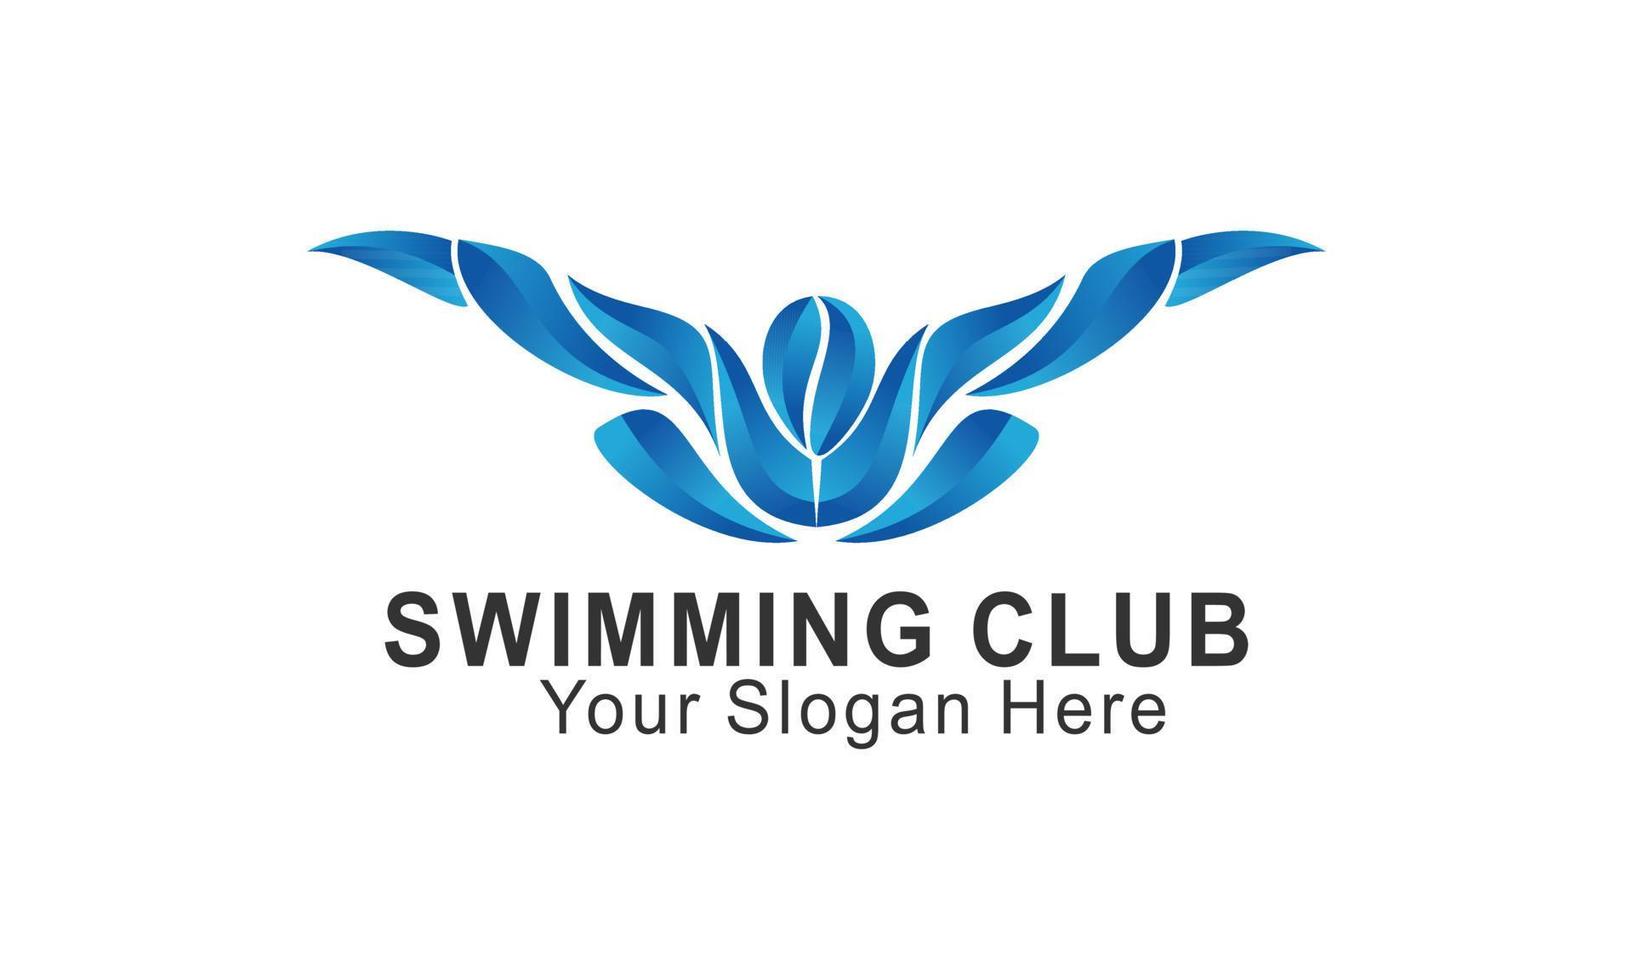 blauw zwemmen logo silhouet zee oceaan water Golf logo vector